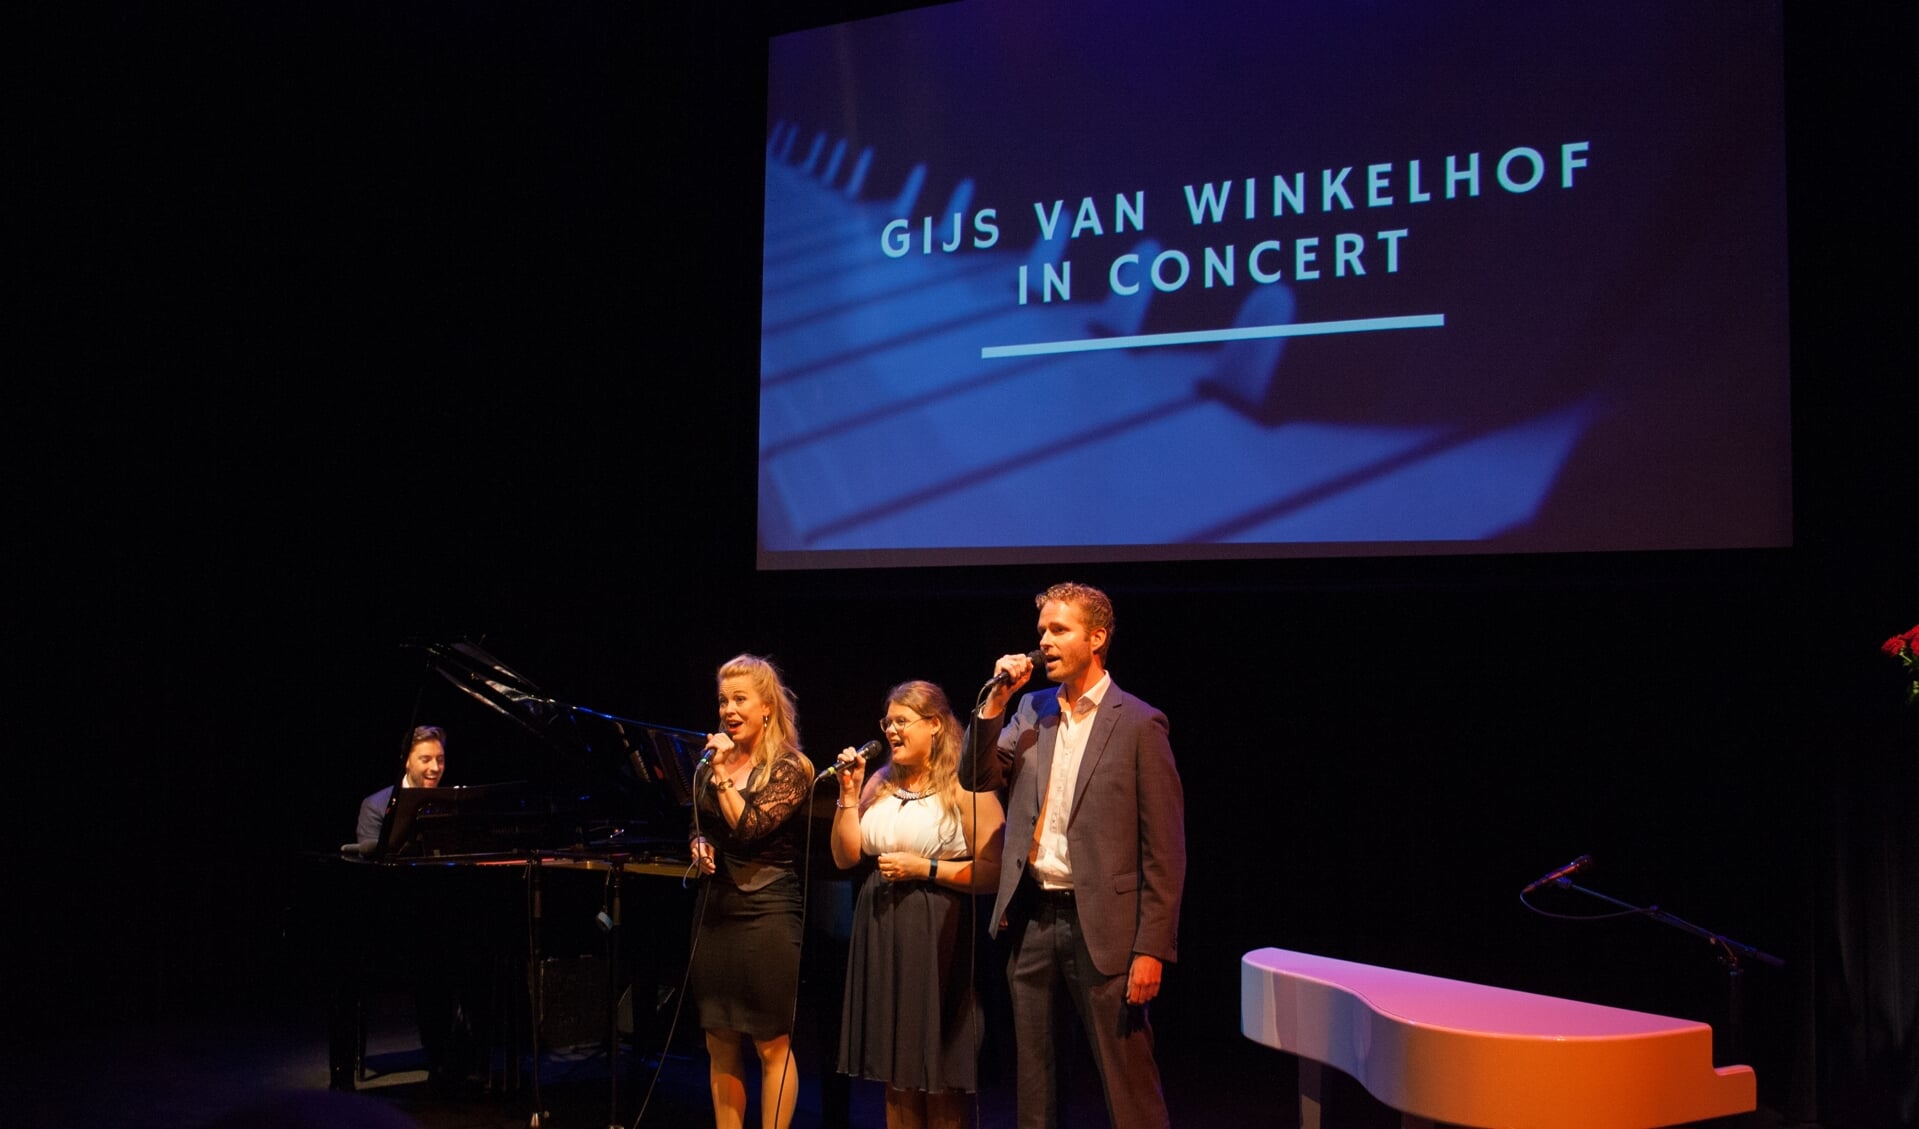 Pianist/componist Gijs van Winkelhof met muzikale vrienden: in Nederland nog onbekend, maar in het buitenland heel populair. (foto Anique van Eijk - Varkevisser)